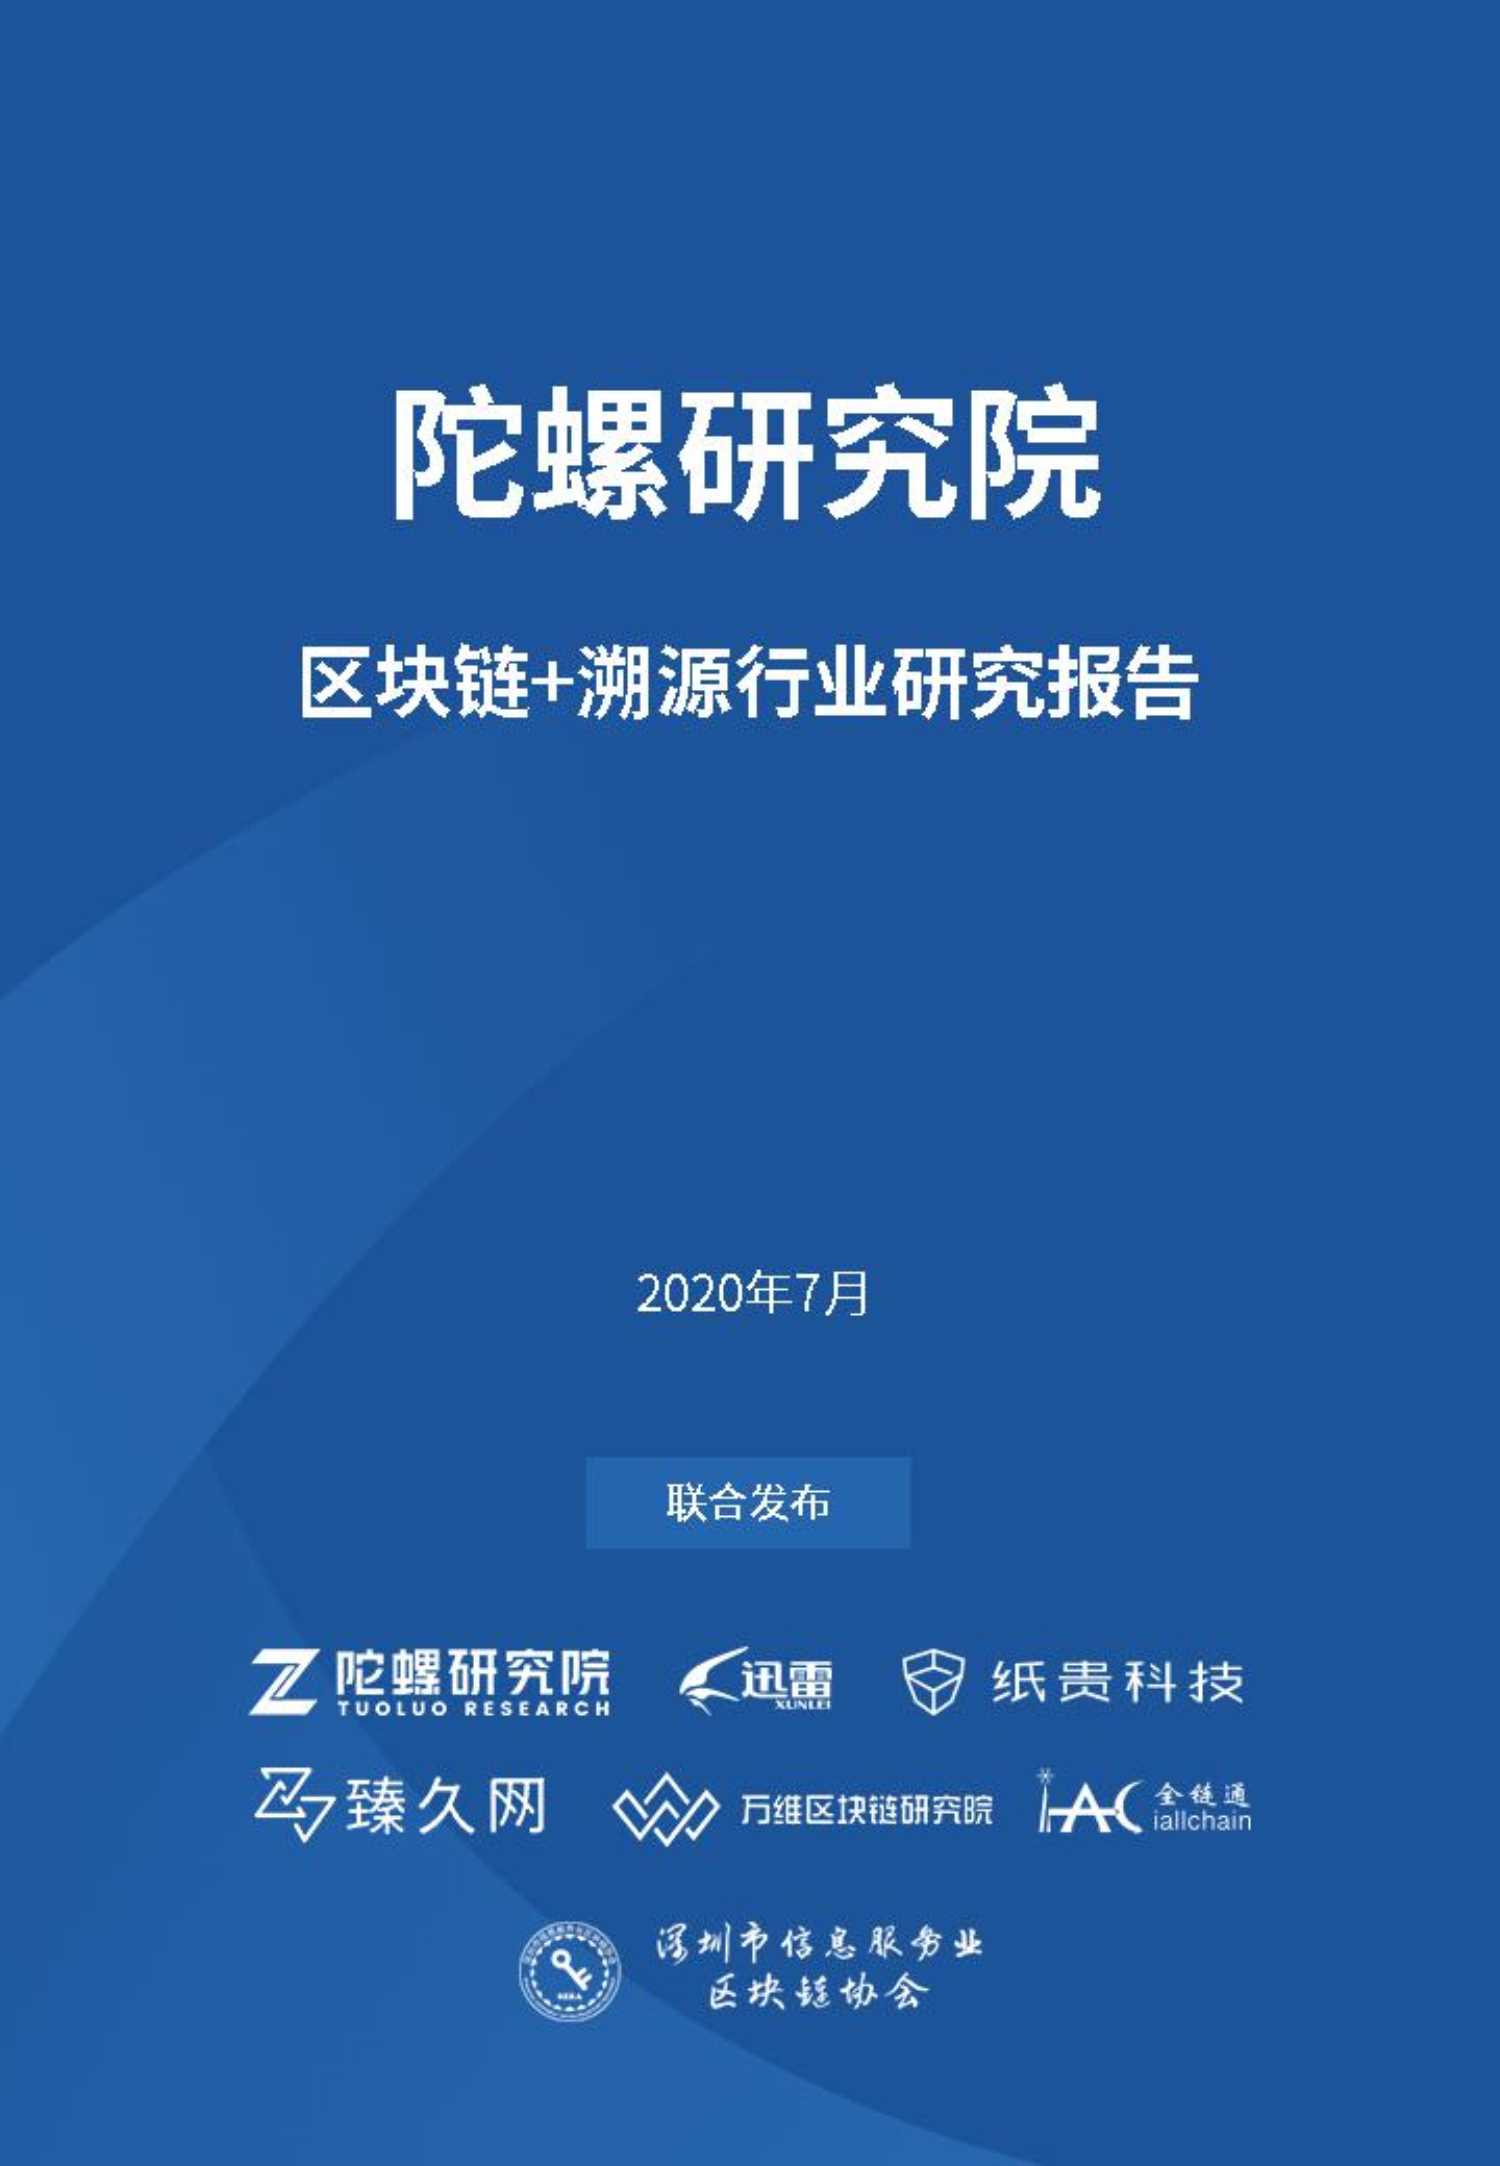 陀螺研究院-中国“区块链 溯源”行业研究报告-2020.07-51页